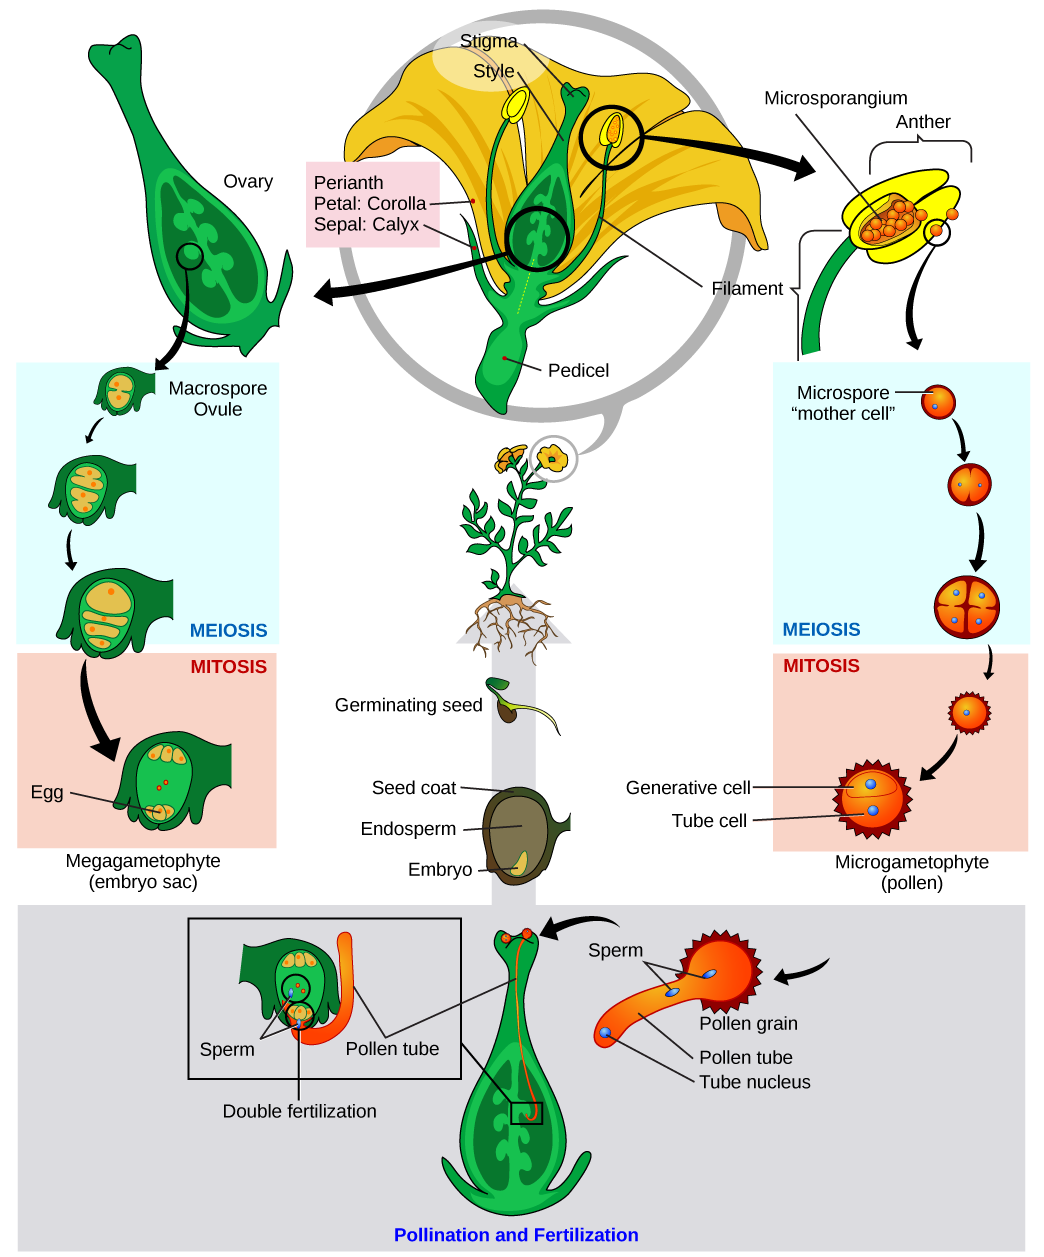 La ilustración muestra un tulipán en sección transversal en la parte superior de una serie circular de imágenes en sentido horario. Un agrandamiento de la antera muestra microsporangio en su interior. Una microespora (la “célula madre”) experimenta meiosis a la etapa de cuatro células. La célula madre se somete entonces a mitosis para convertirse en un microgametofito, o grano de polen. En sentido antihorario desde la sección transversal de la flor, se muestra un ovario con varios óvulos de macrosporas en su interior. Uno se muestra desarrollándose en el saco embrionario a través de meiosis y luego mitosis. En la parte inferior de la ilustración, el grano de polen aterriza sobre el estigma de una flor, y un tubo de polen crece desde el grano de polen hasta el interior del estilo hasta el ovario. El tubo de polen contiene un núcleo de tubo de polen y dos espermatozoides. Los espermatozoides fertilizan el óvulo y los núcleos polares dentro del saco embrionario (doble fertilización).